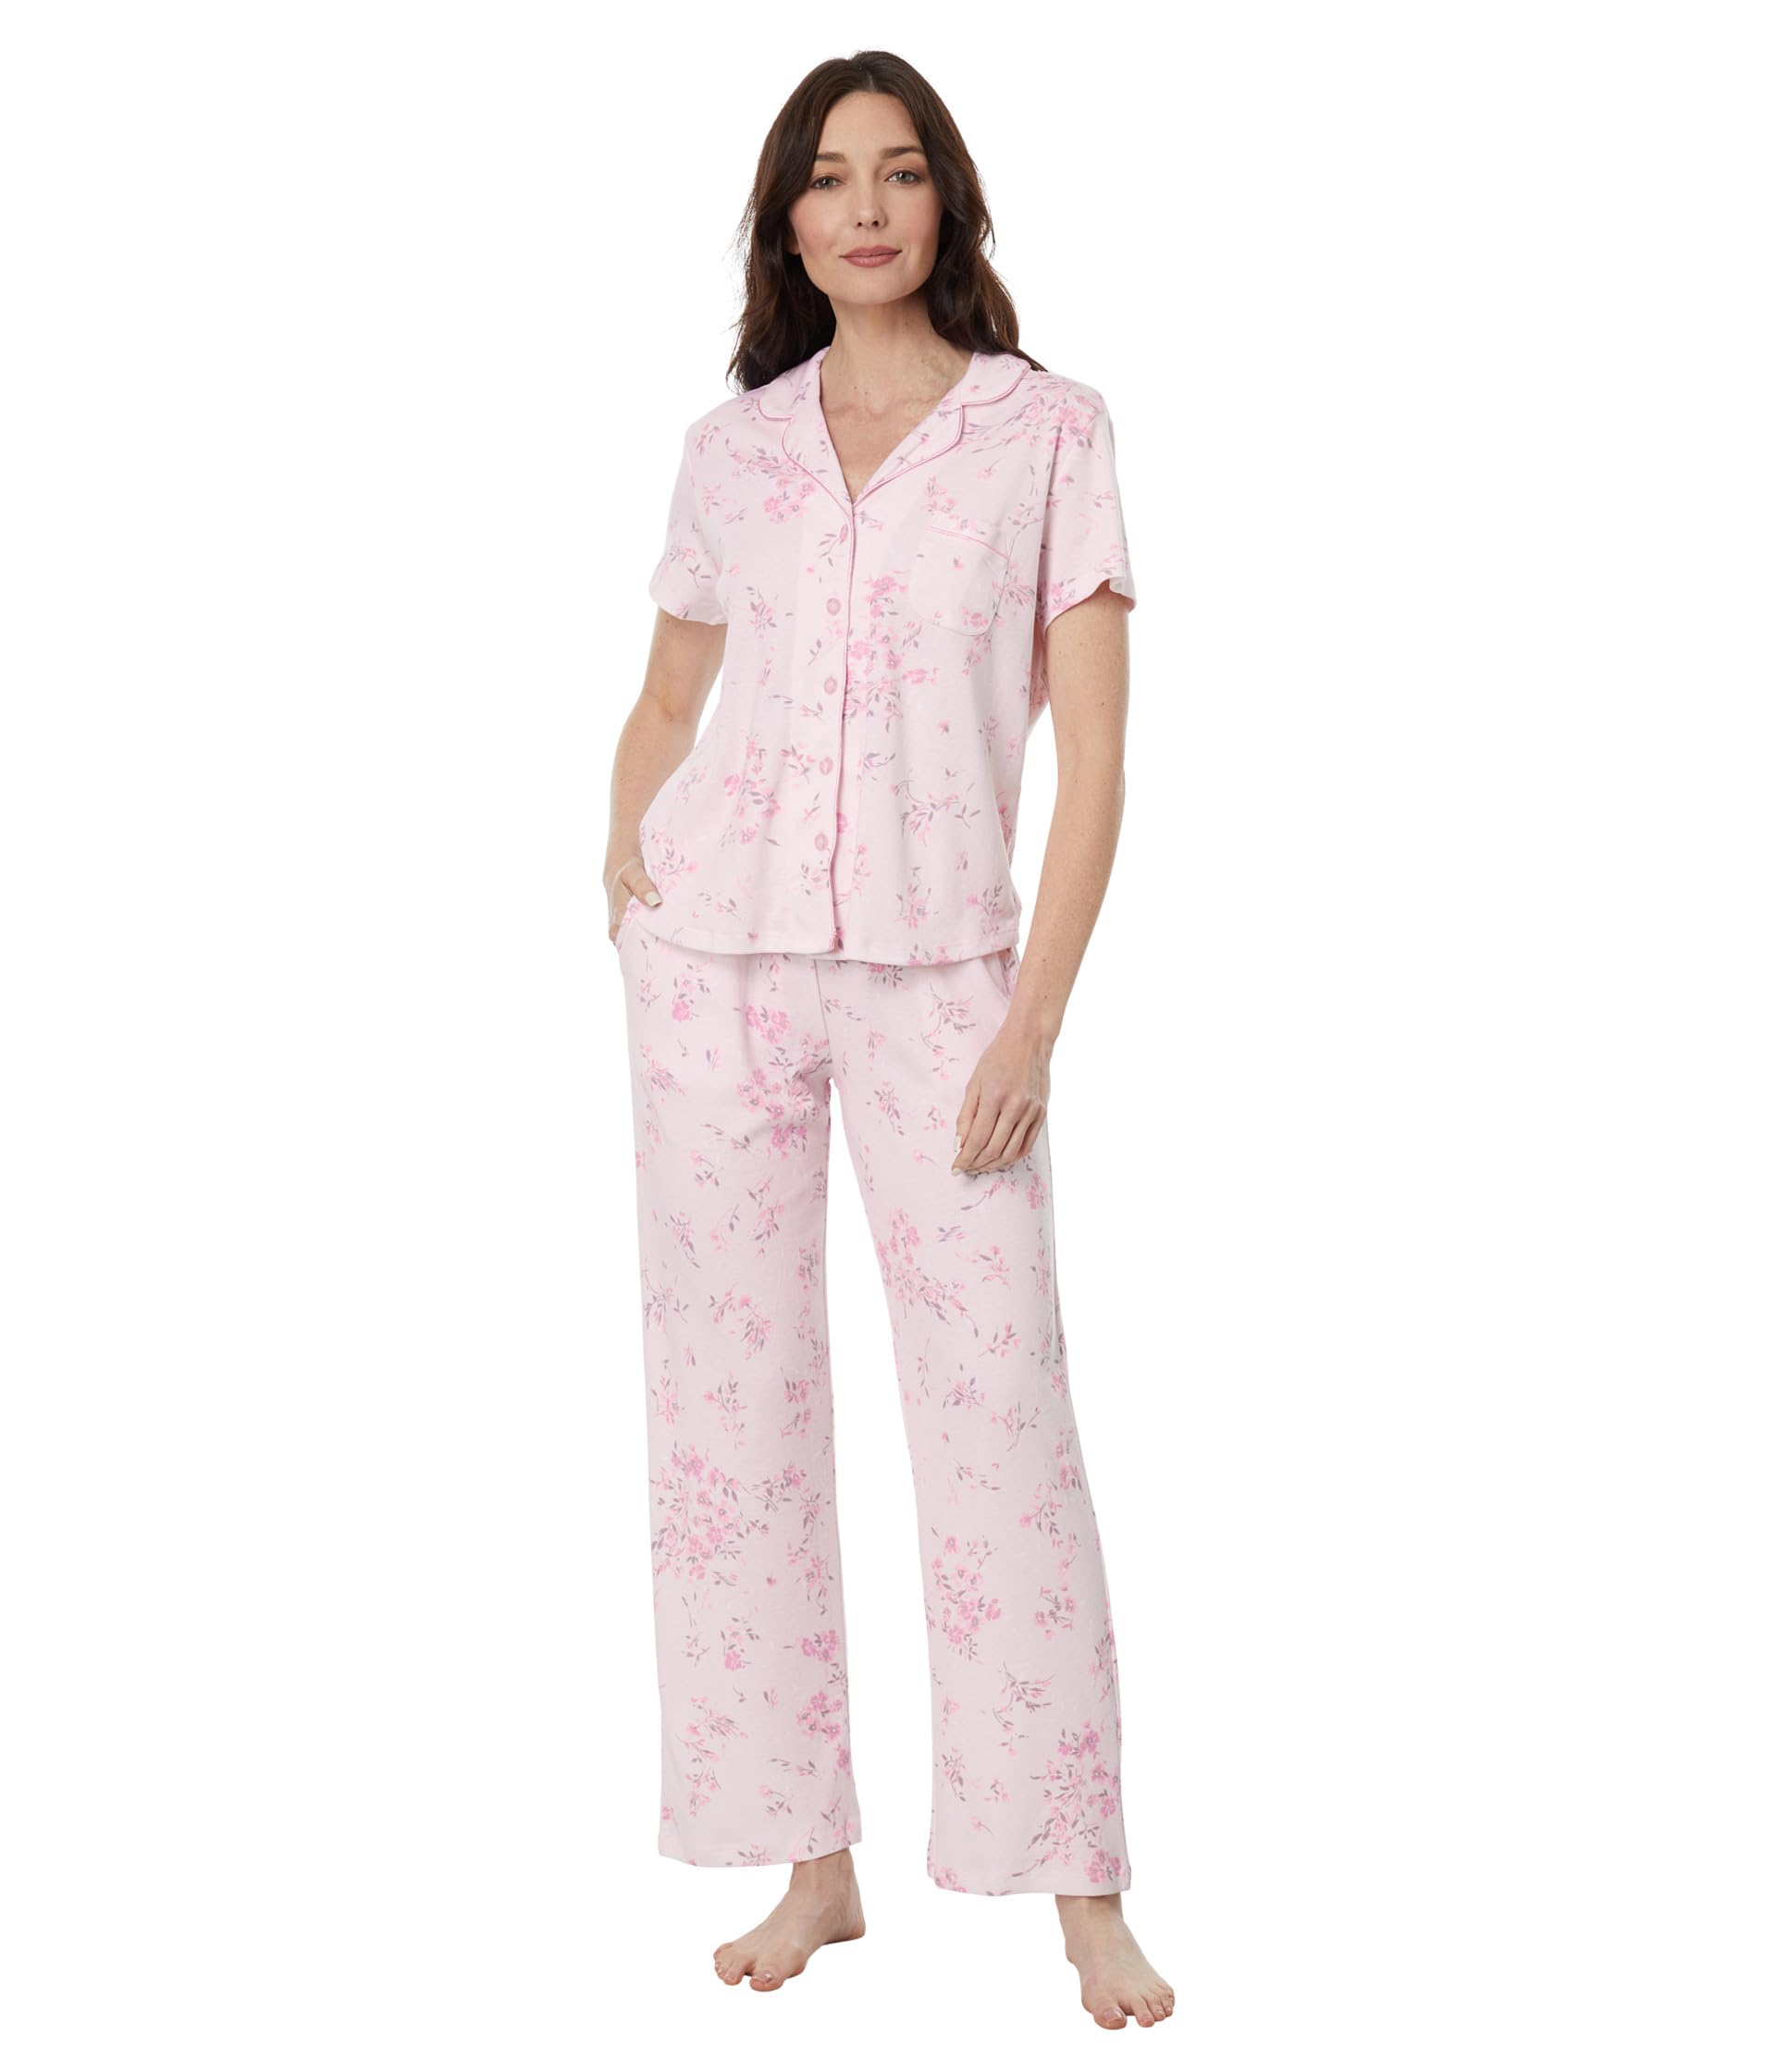 Пижамный комплект Petite Blossom с короткими рукавами и принтом для девушки Karen Neuburger